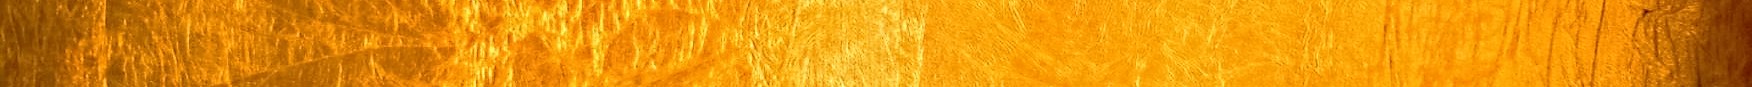 Gold Metal Wallpaper Line Divider │ GotLifeQuestions.com by Joseph Cruz